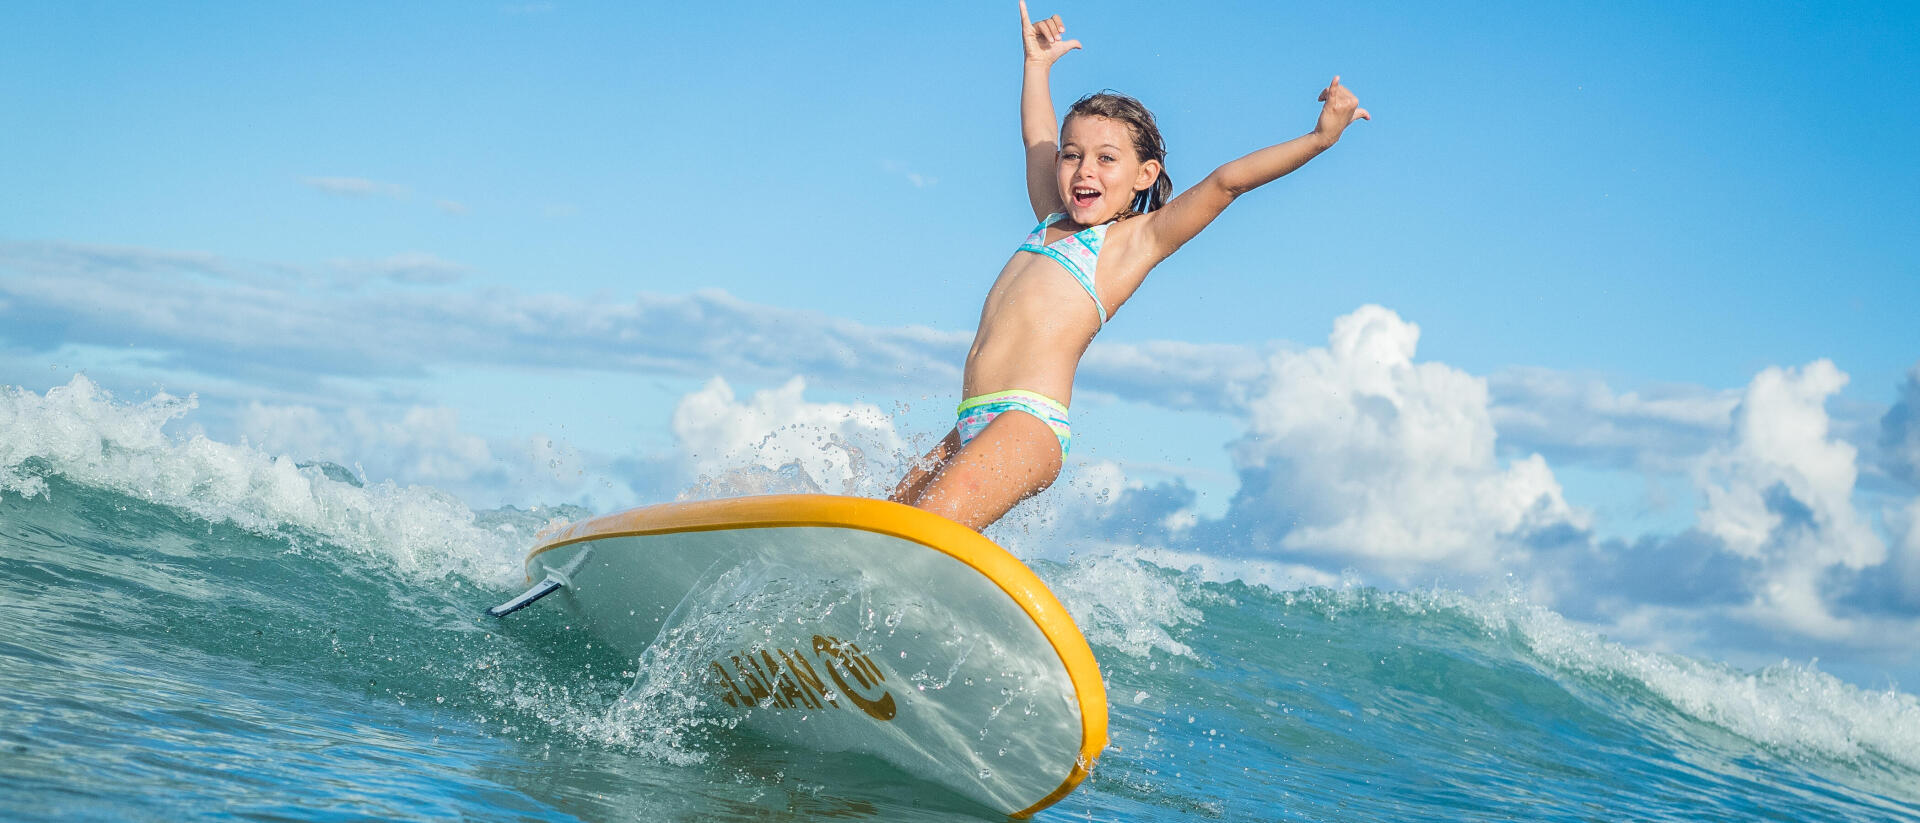 Comment apprendre à son enfant à surfer ?